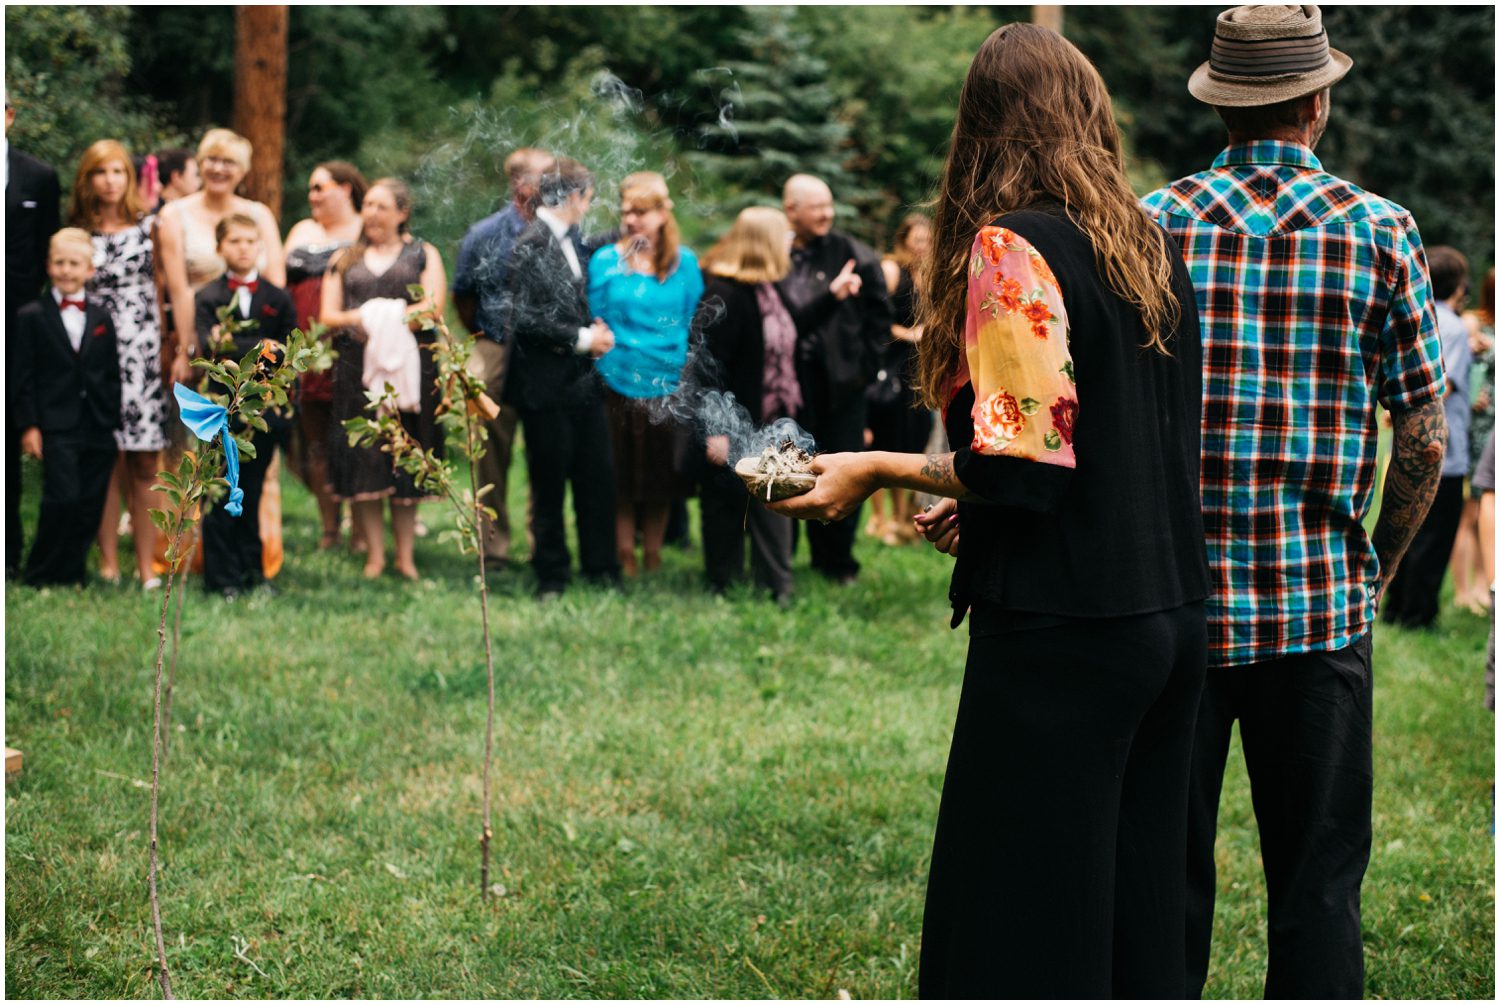 Native American Wedding Ceremony, Colorado Wedding Photographer, Evergreen Colorado Wedding Photographer, Unique Wedding Ceremony Traditions, Wedding Ceremony Ideas, Spiritual Wedding Ceremony